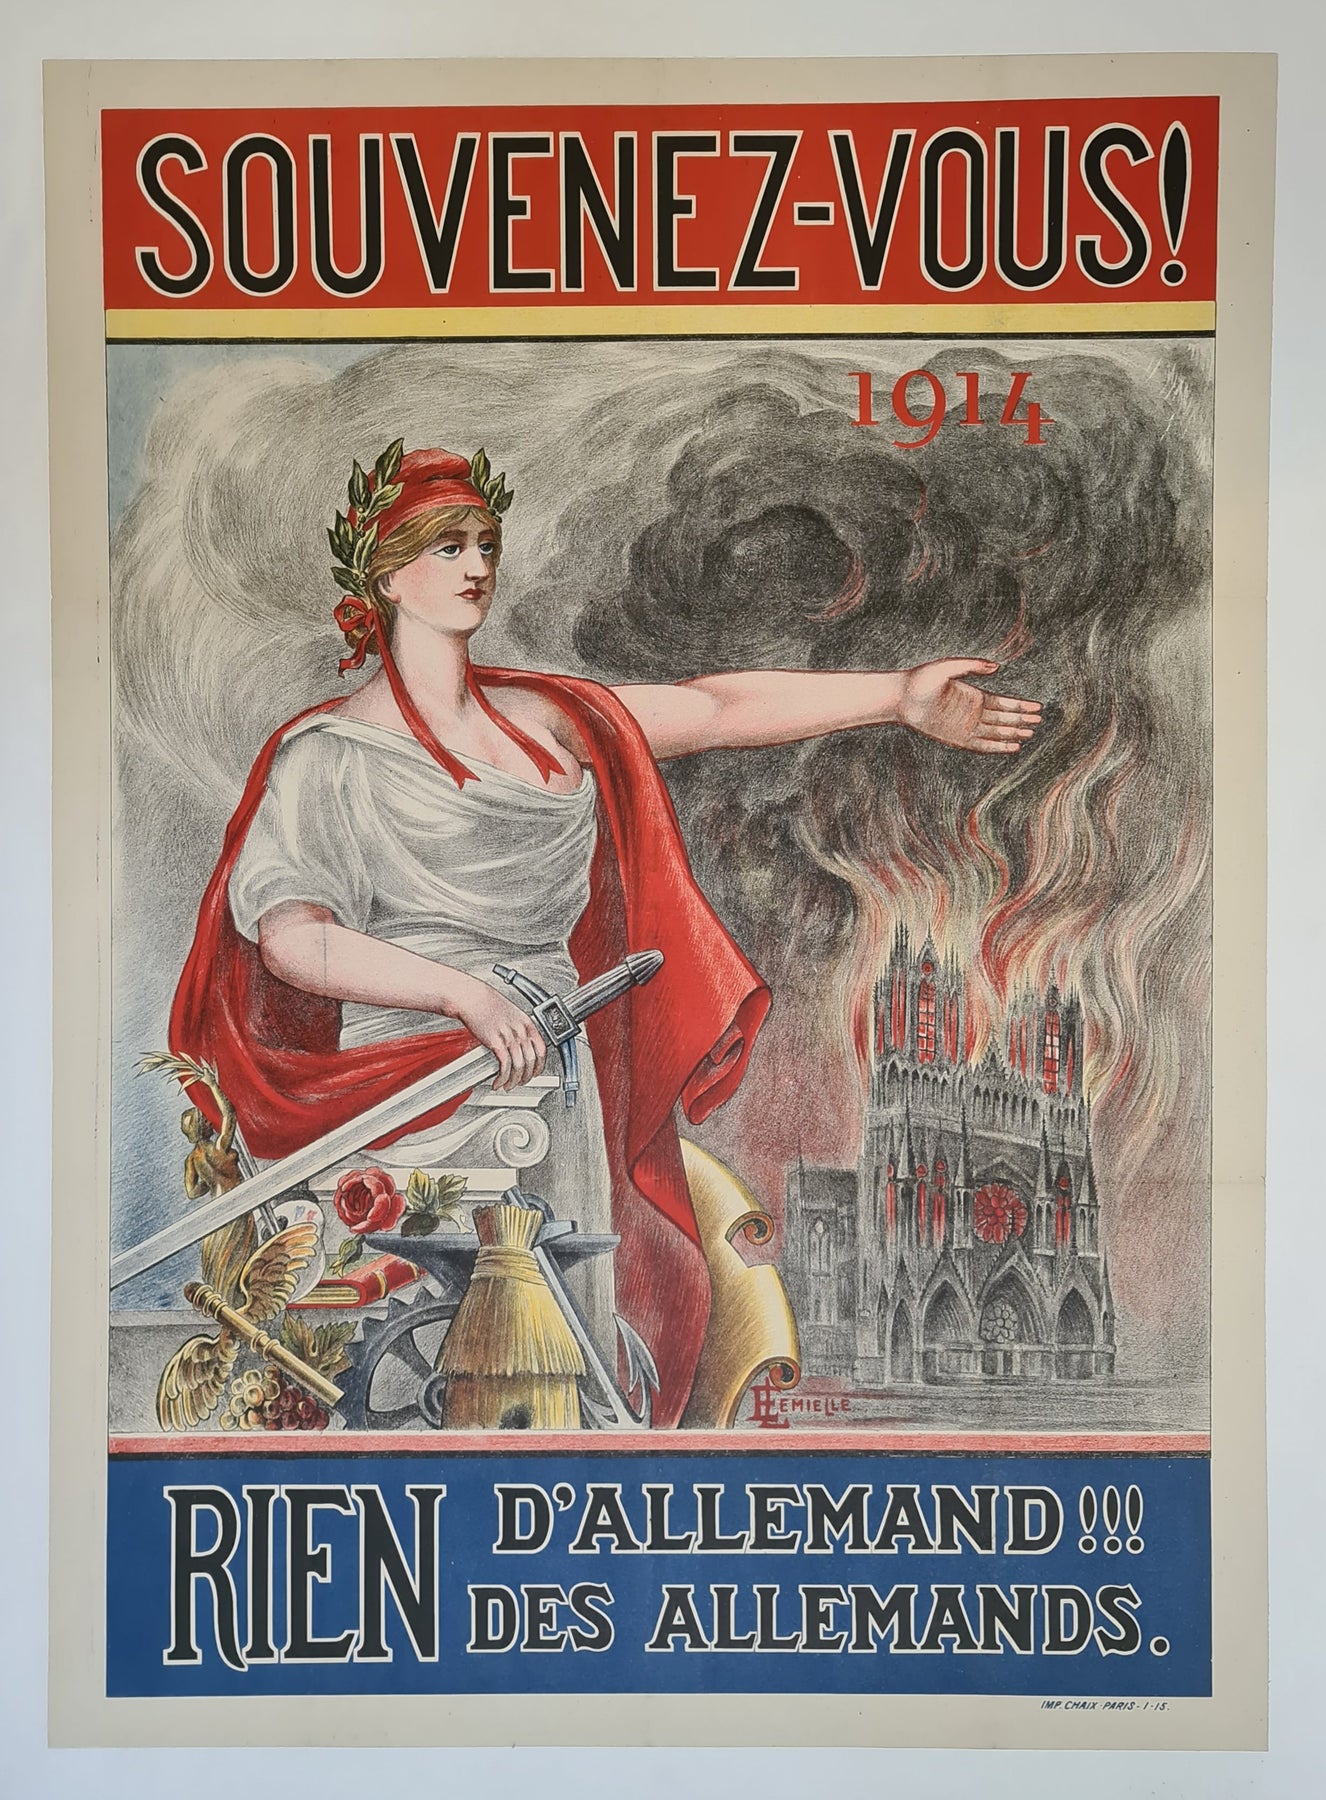 ! 1915 Souvenez-vous 1881 d\'allemand!!! rien des Galerie allemands. – 1914 rien